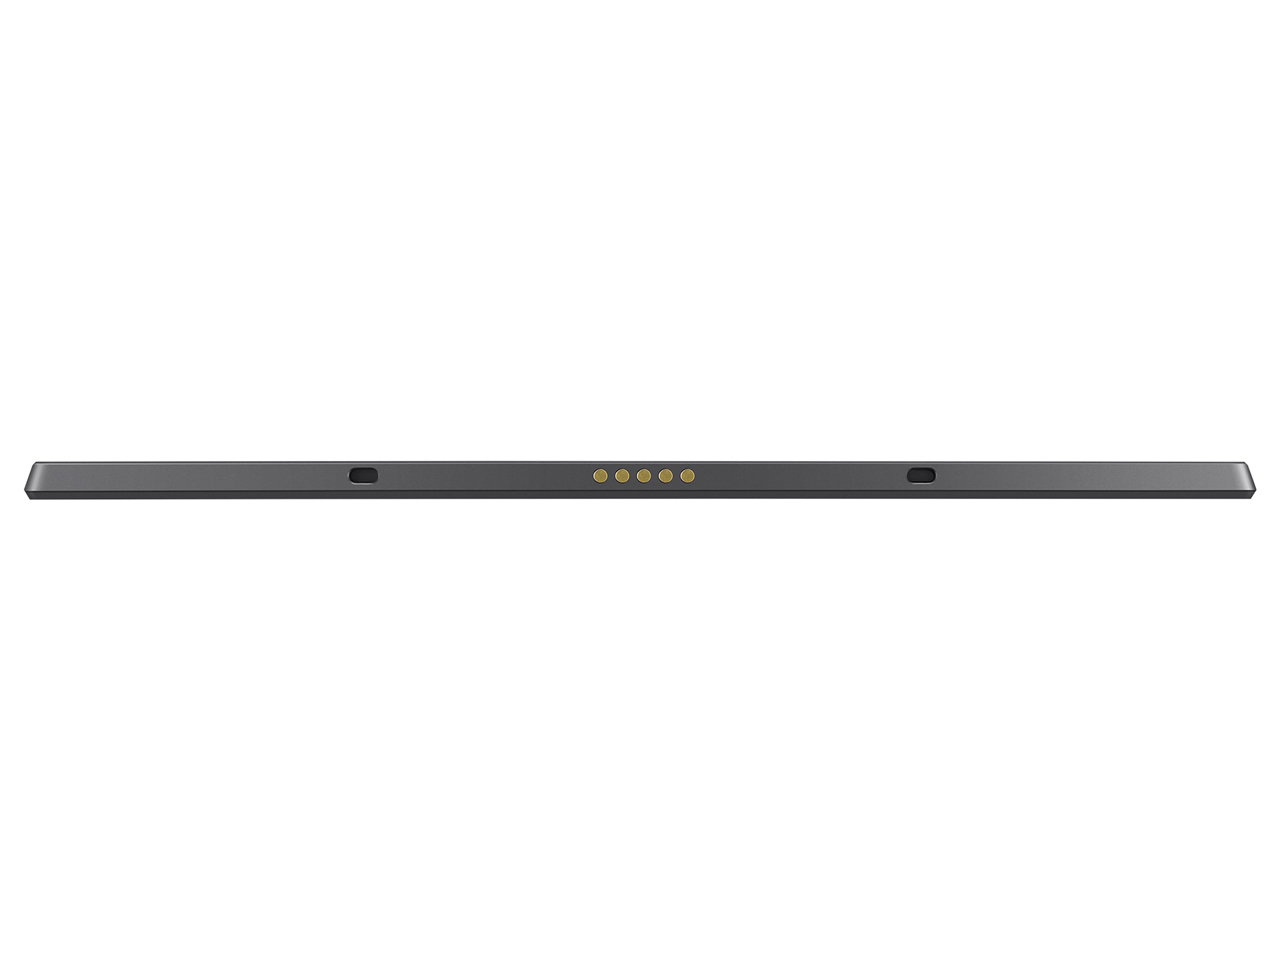 『本体 底面』 Chromebook Detachable CM3 CM3000DVA-HT0019 の製品画像